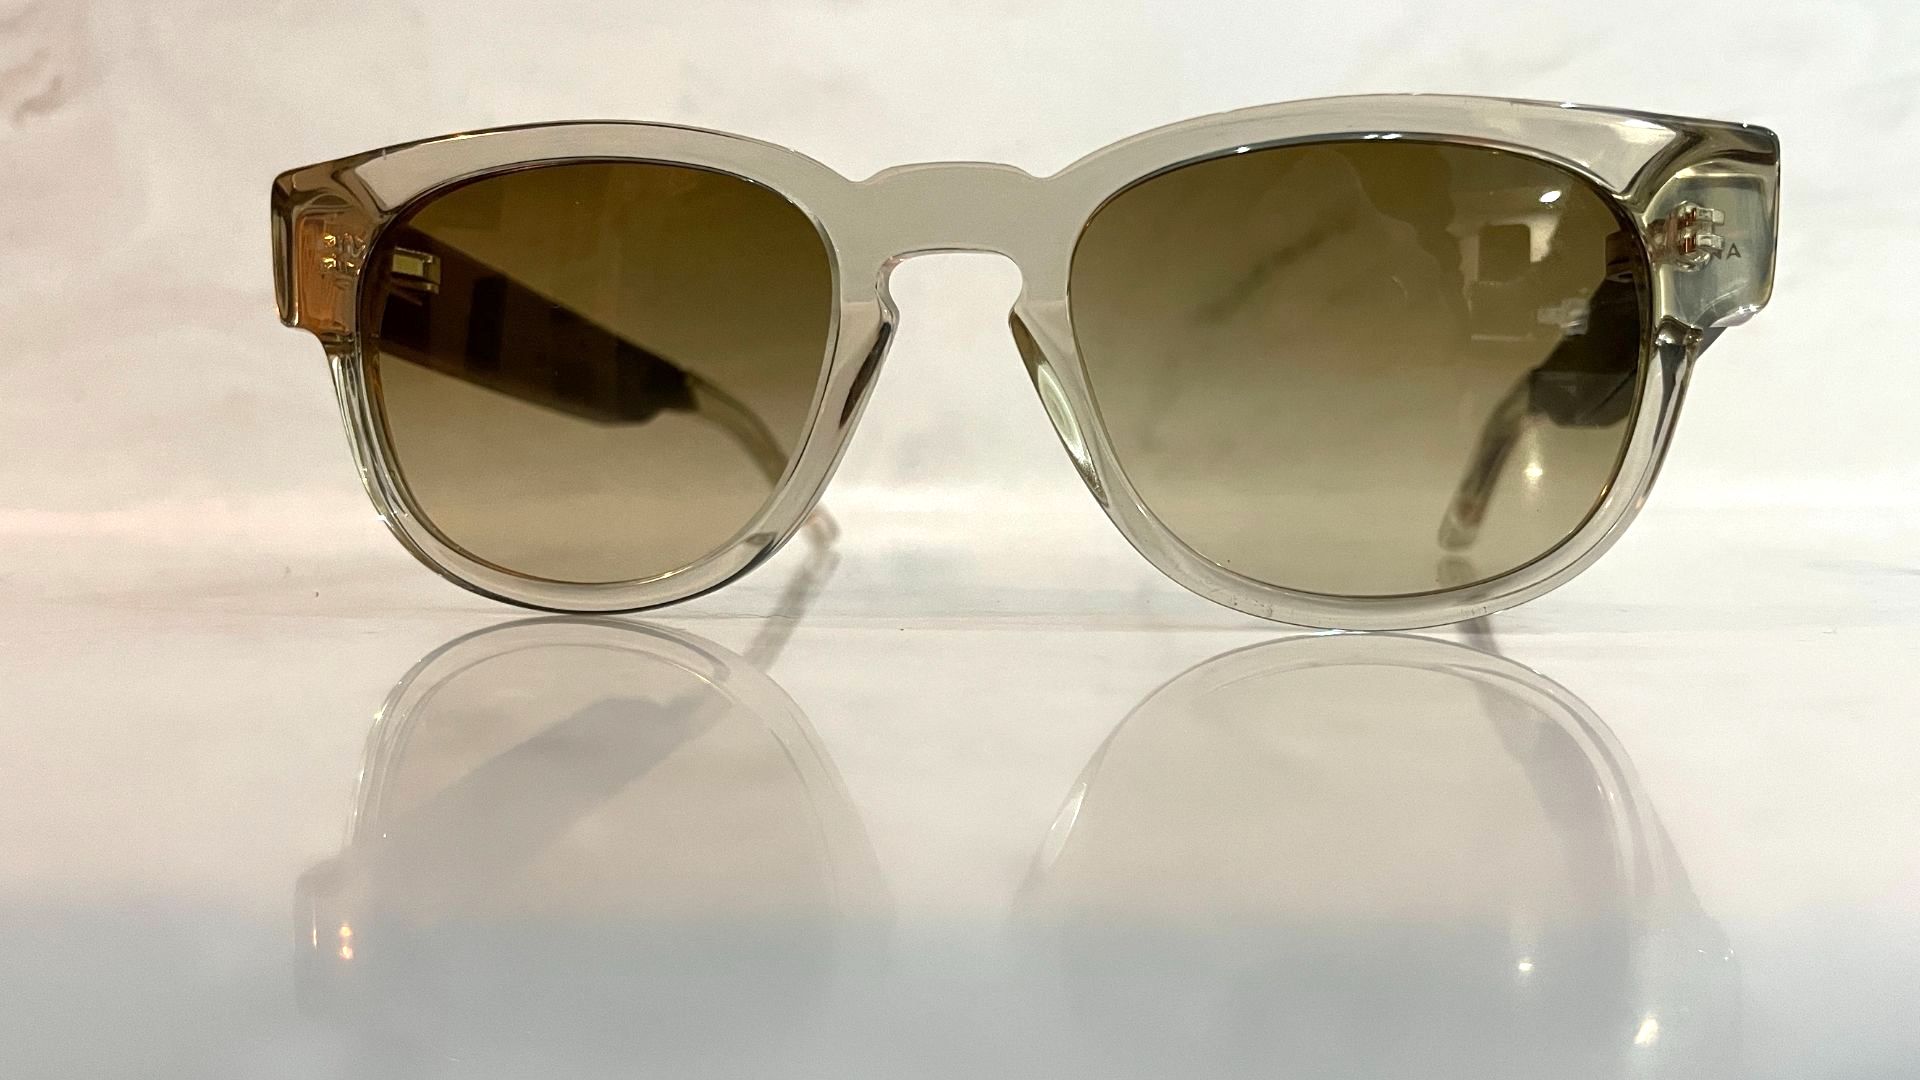 Fauna Audio Spiro Transparent Brown Sunglasses review | TechRadar